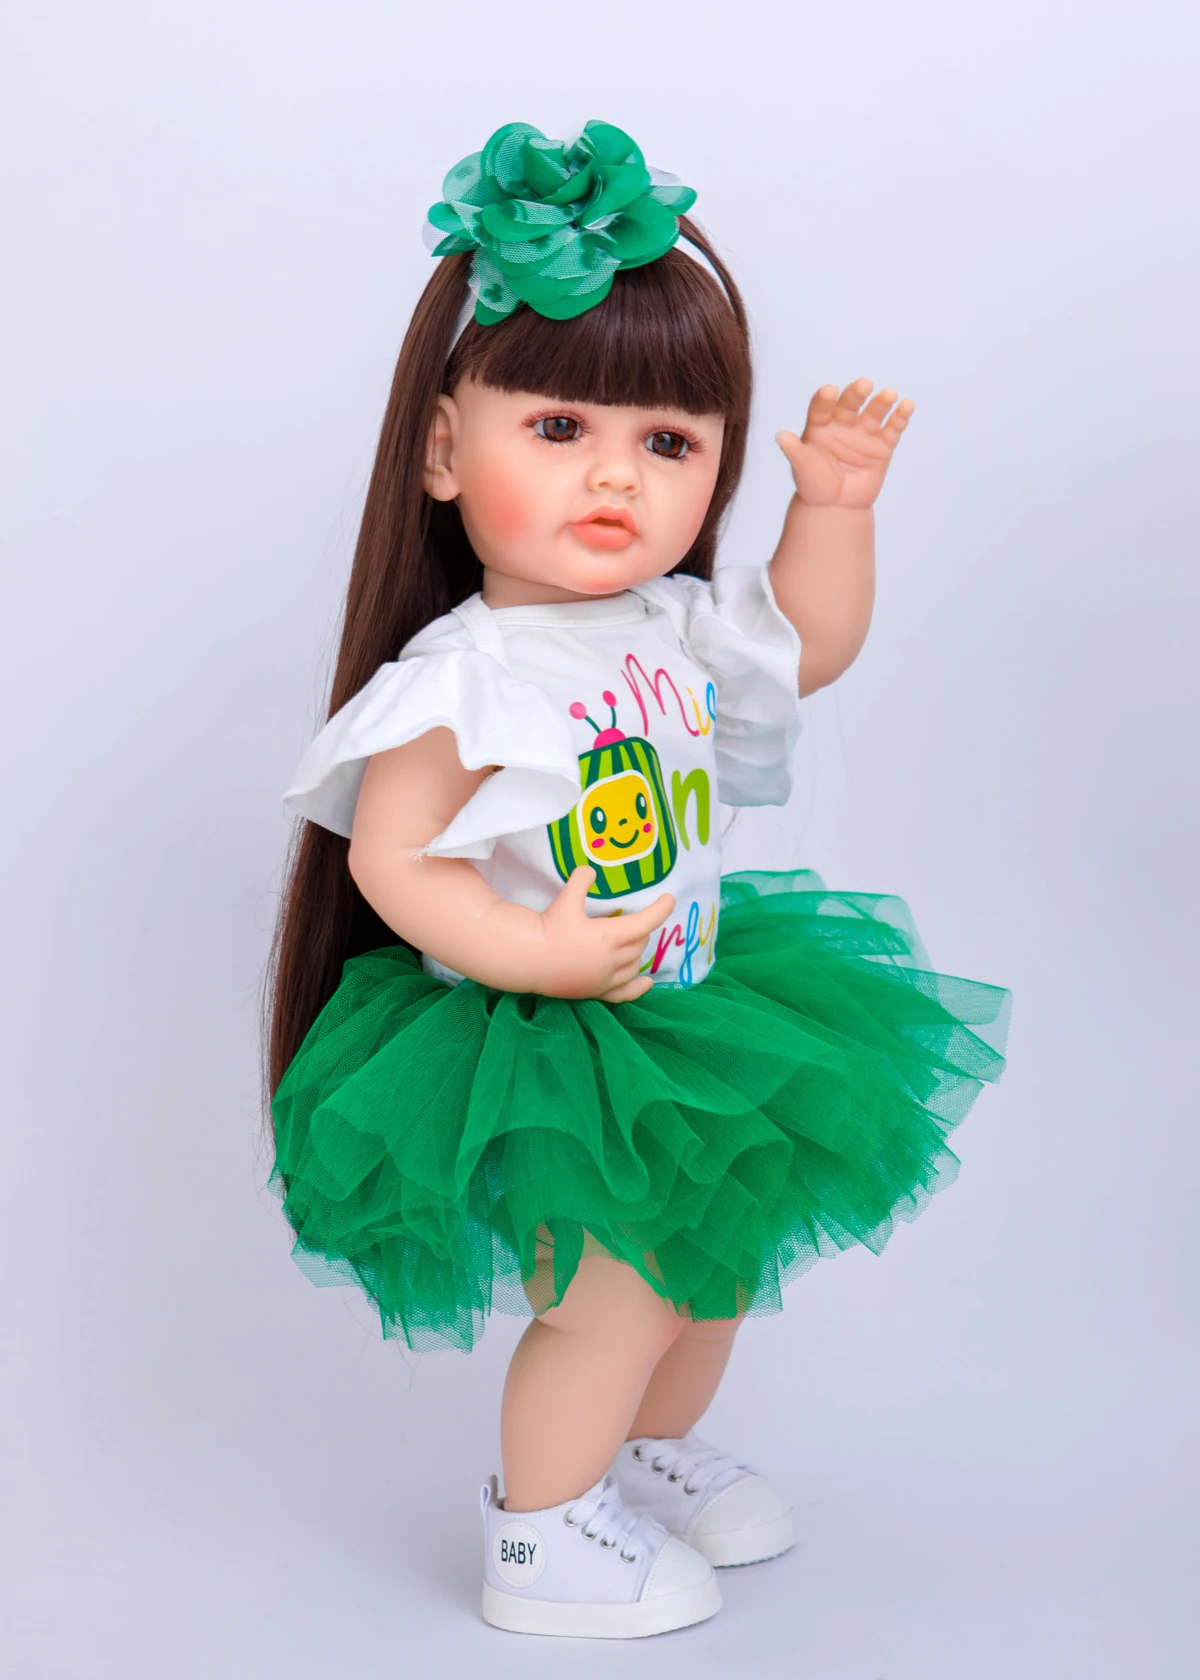 Edição limitada Estilos de Melancia Saia 55cm Boneca de Silicone de Vinil Reborn Baby Doll Brinquedos Presentes de Aniversário Para o Dia das Crianças